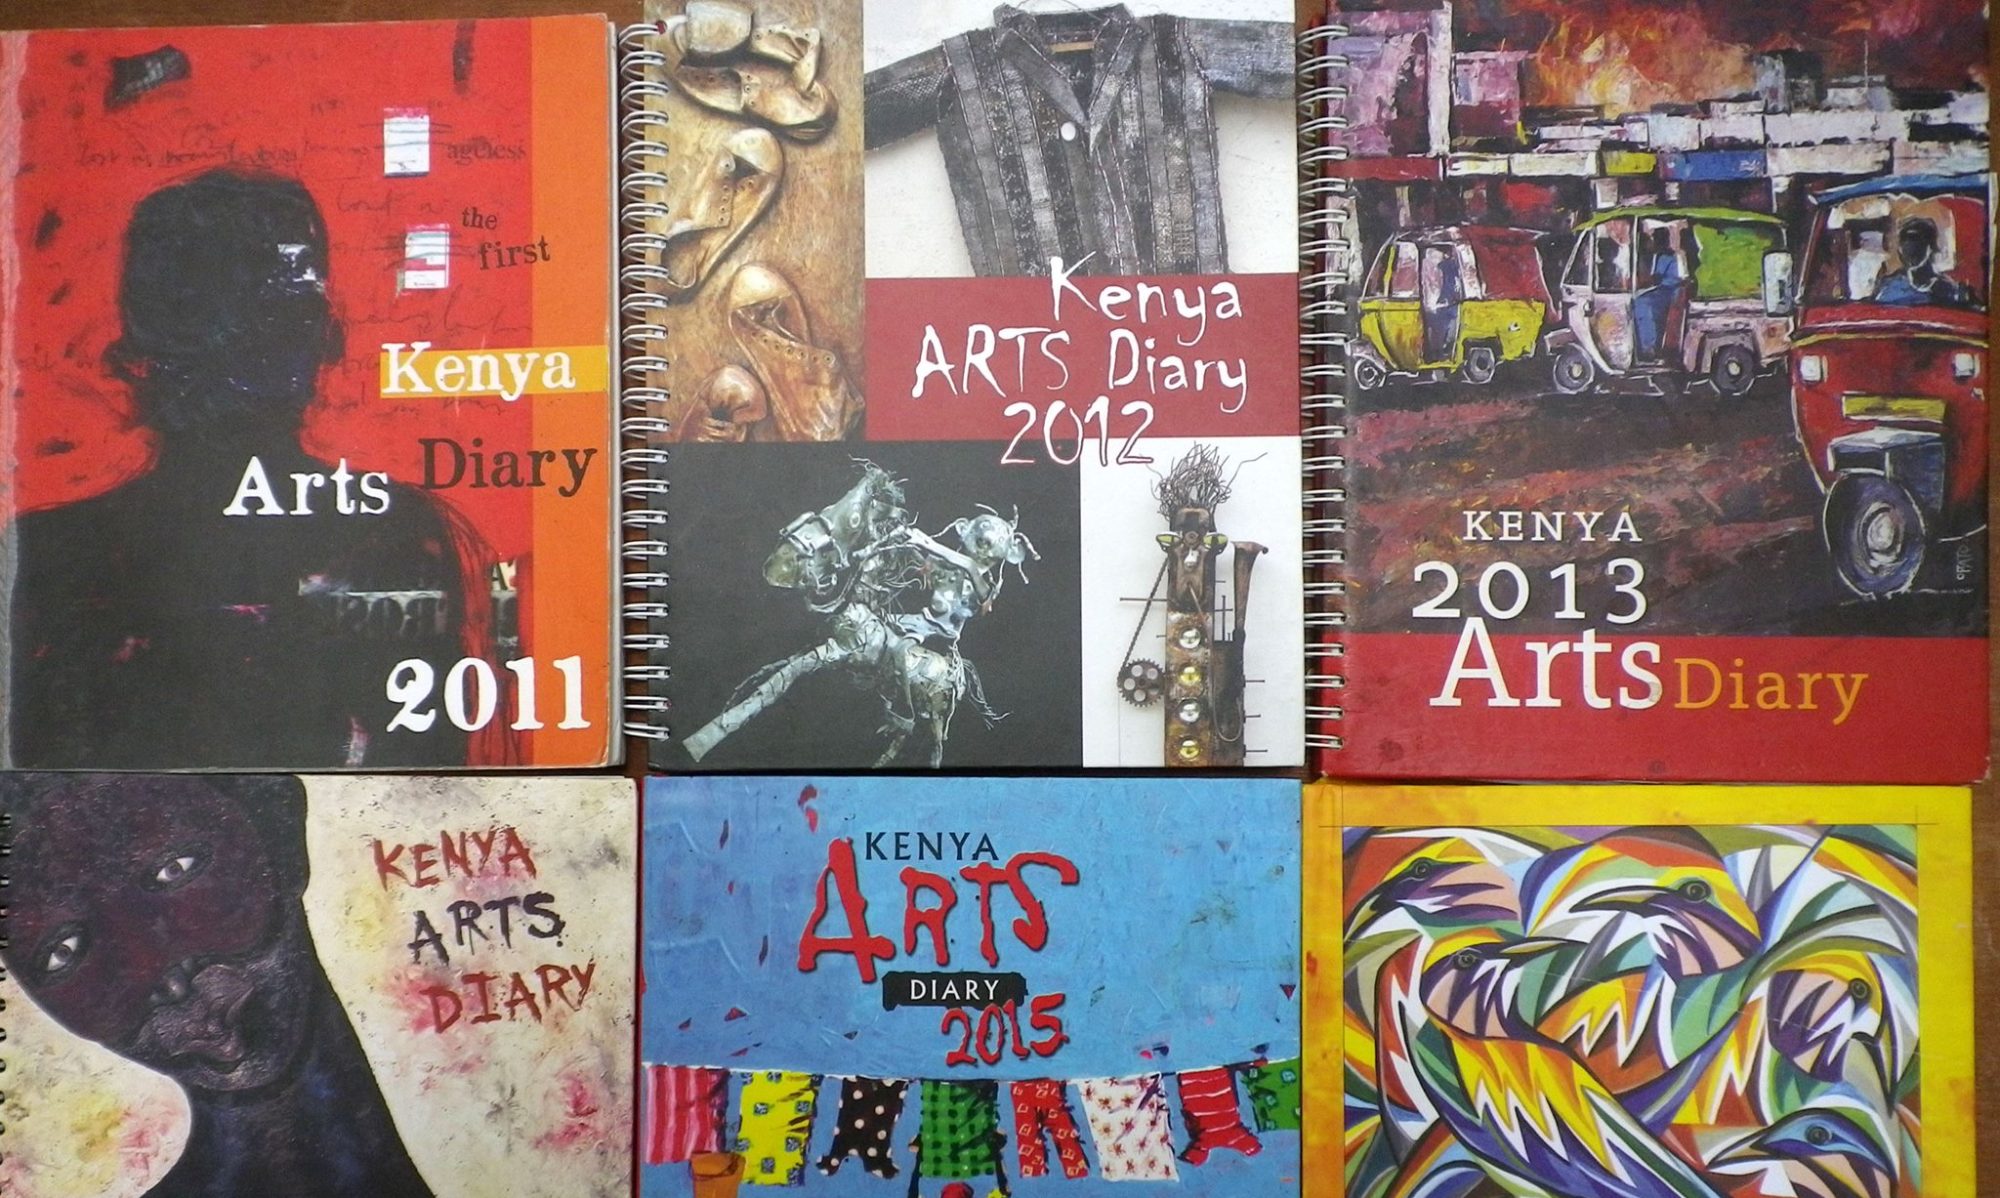 Kenya Arts Diary